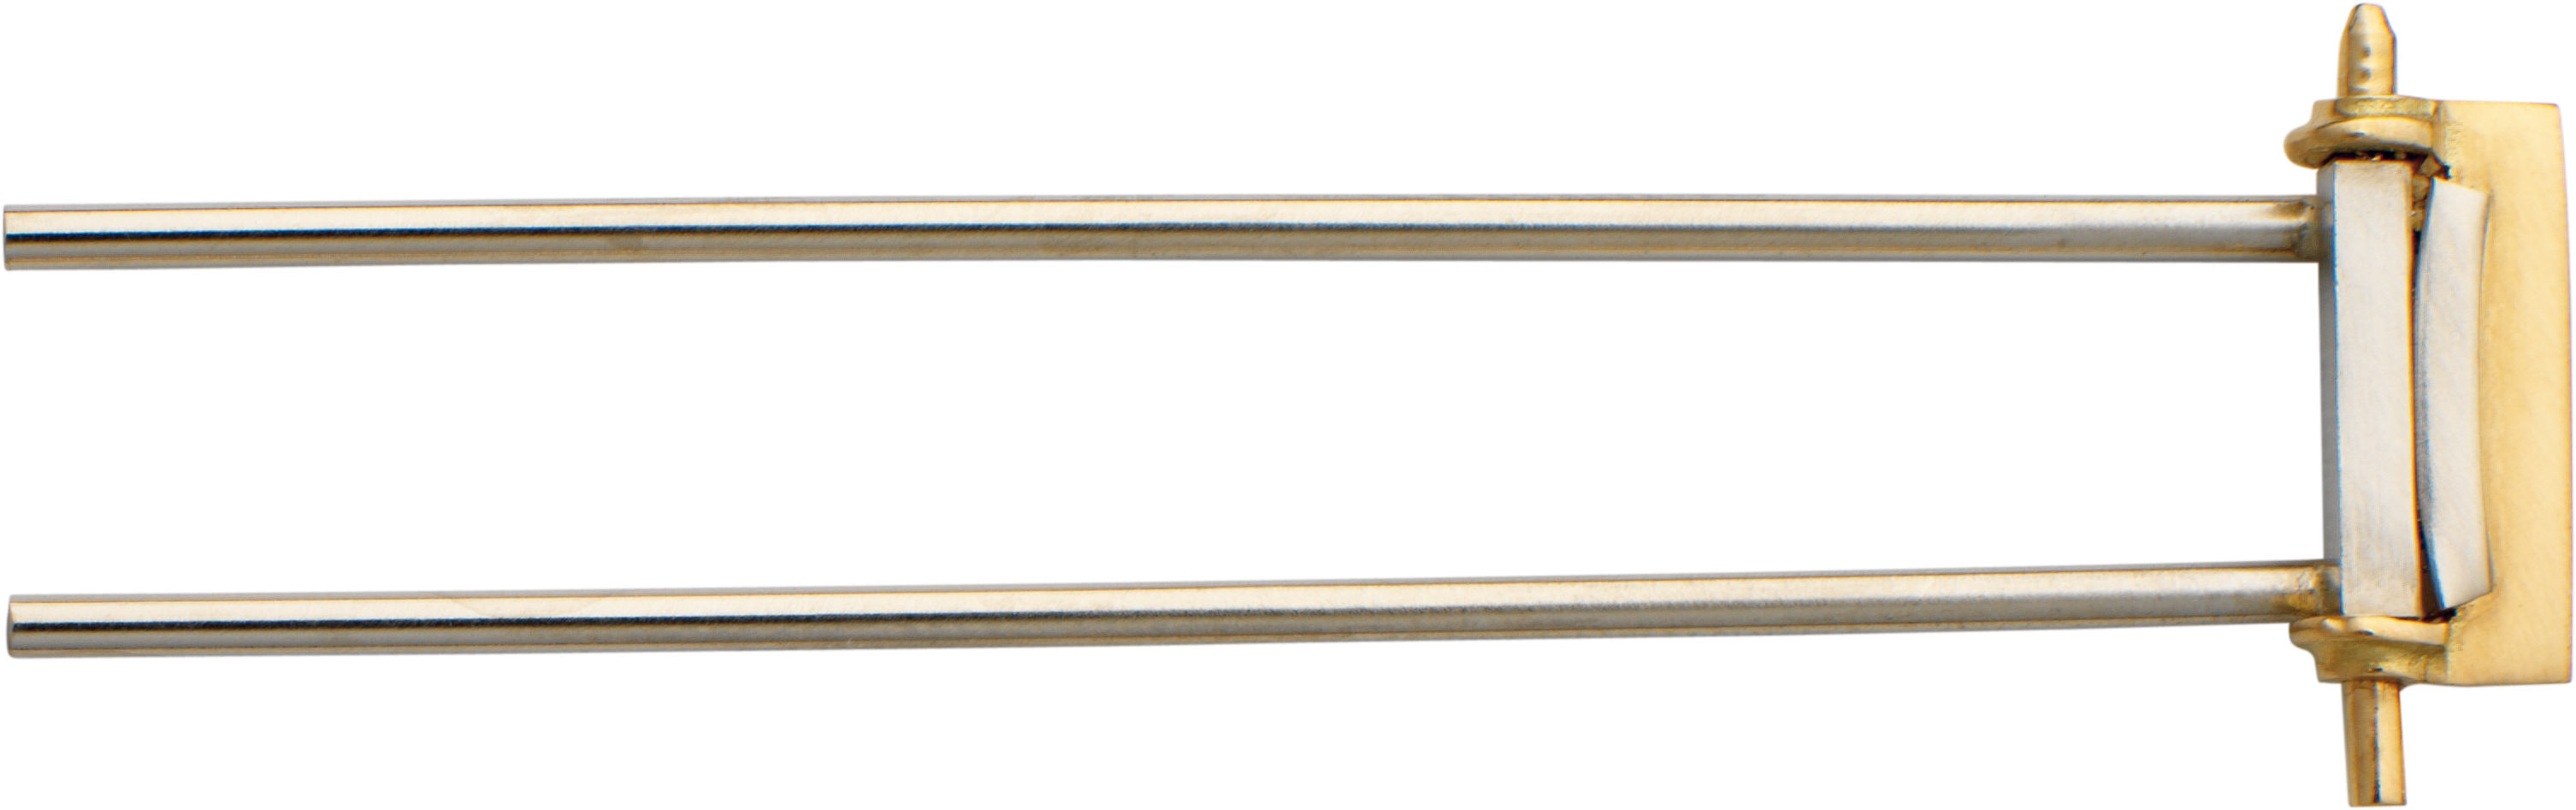 Double pin gold 750/-Gg/-Wg bi-colour, L 40,00 x W 10,00mm